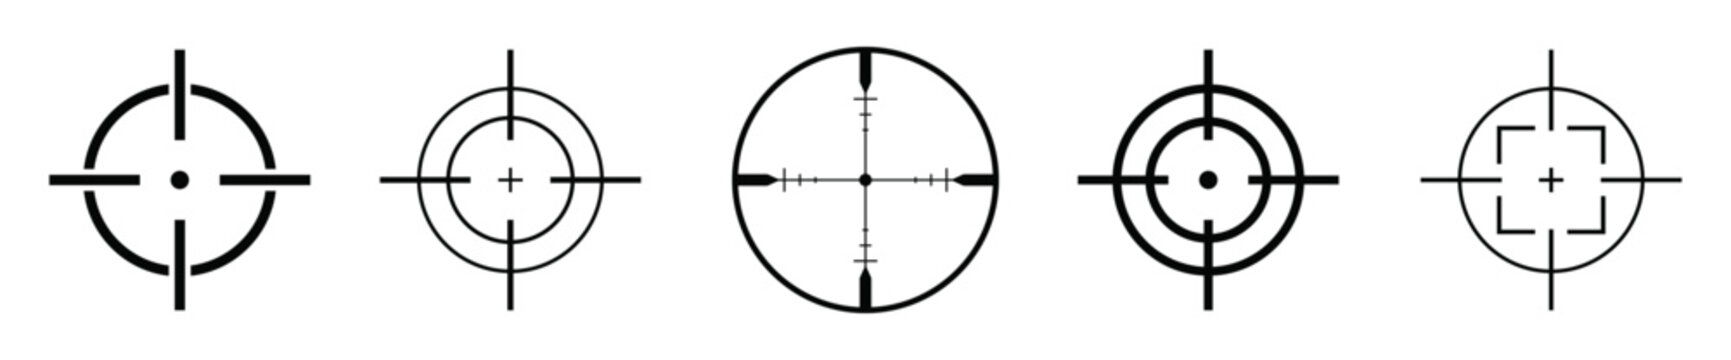 Target destination icons set. Aim sniper shoot symbols.